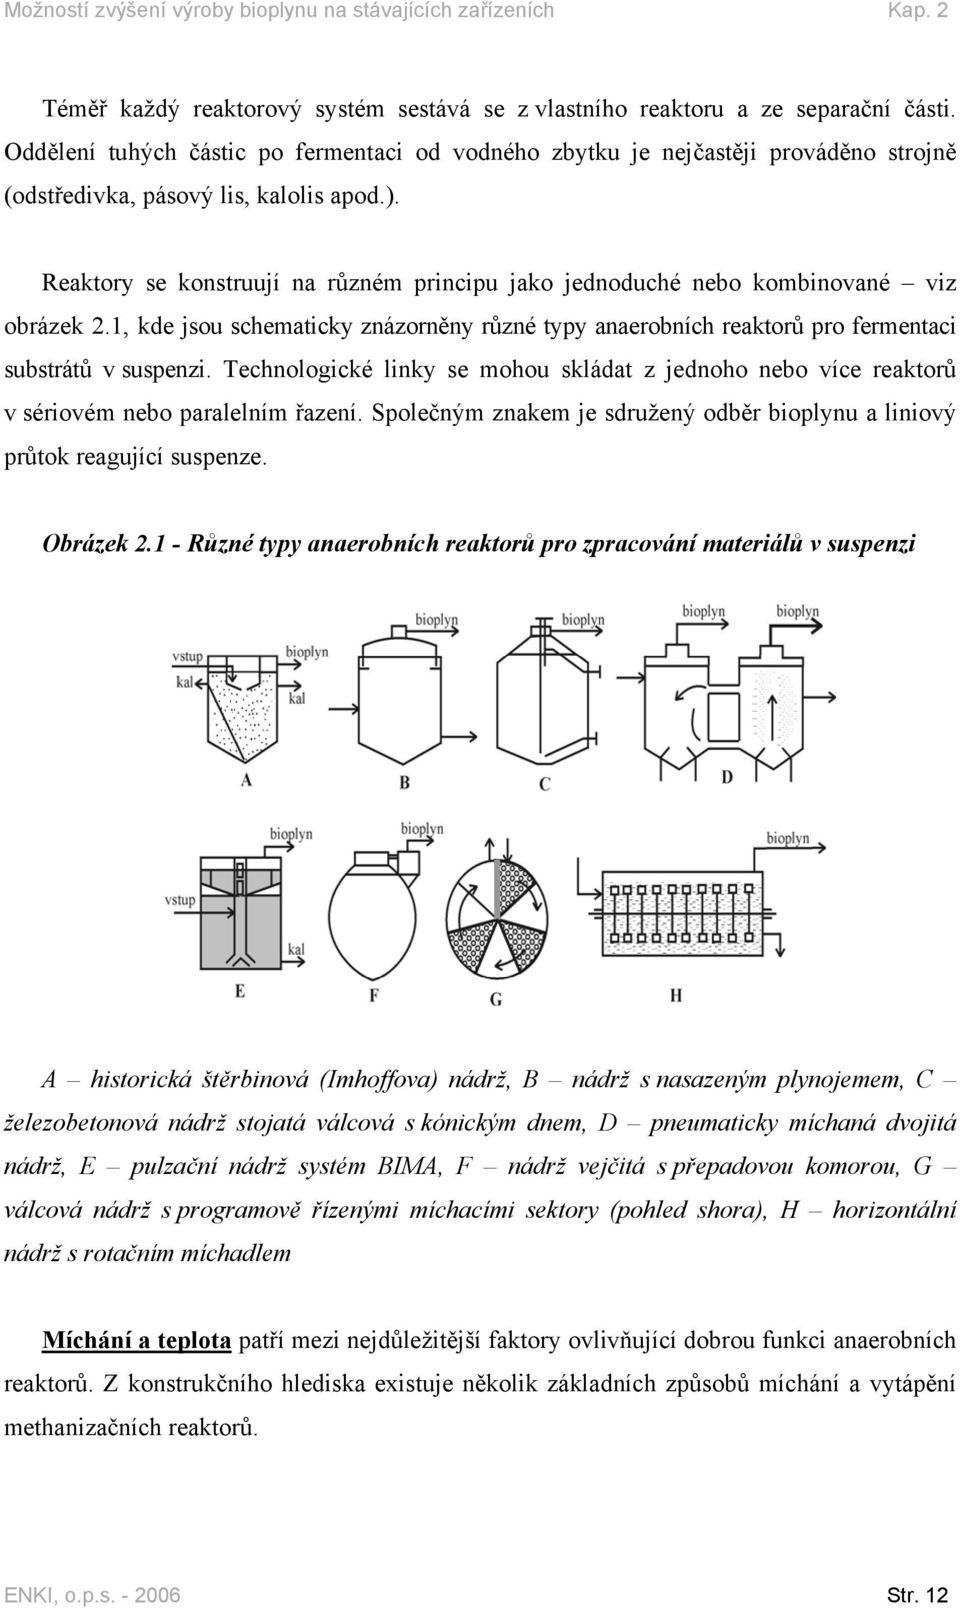 Reaktory se konstruují na různém principu jako jednoduché nebo kombinované viz obrázek 2.1, kde jsou schematicky znázorněny různé typy anaerobních reaktorů pro fermentaci substrátů v suspenzi.